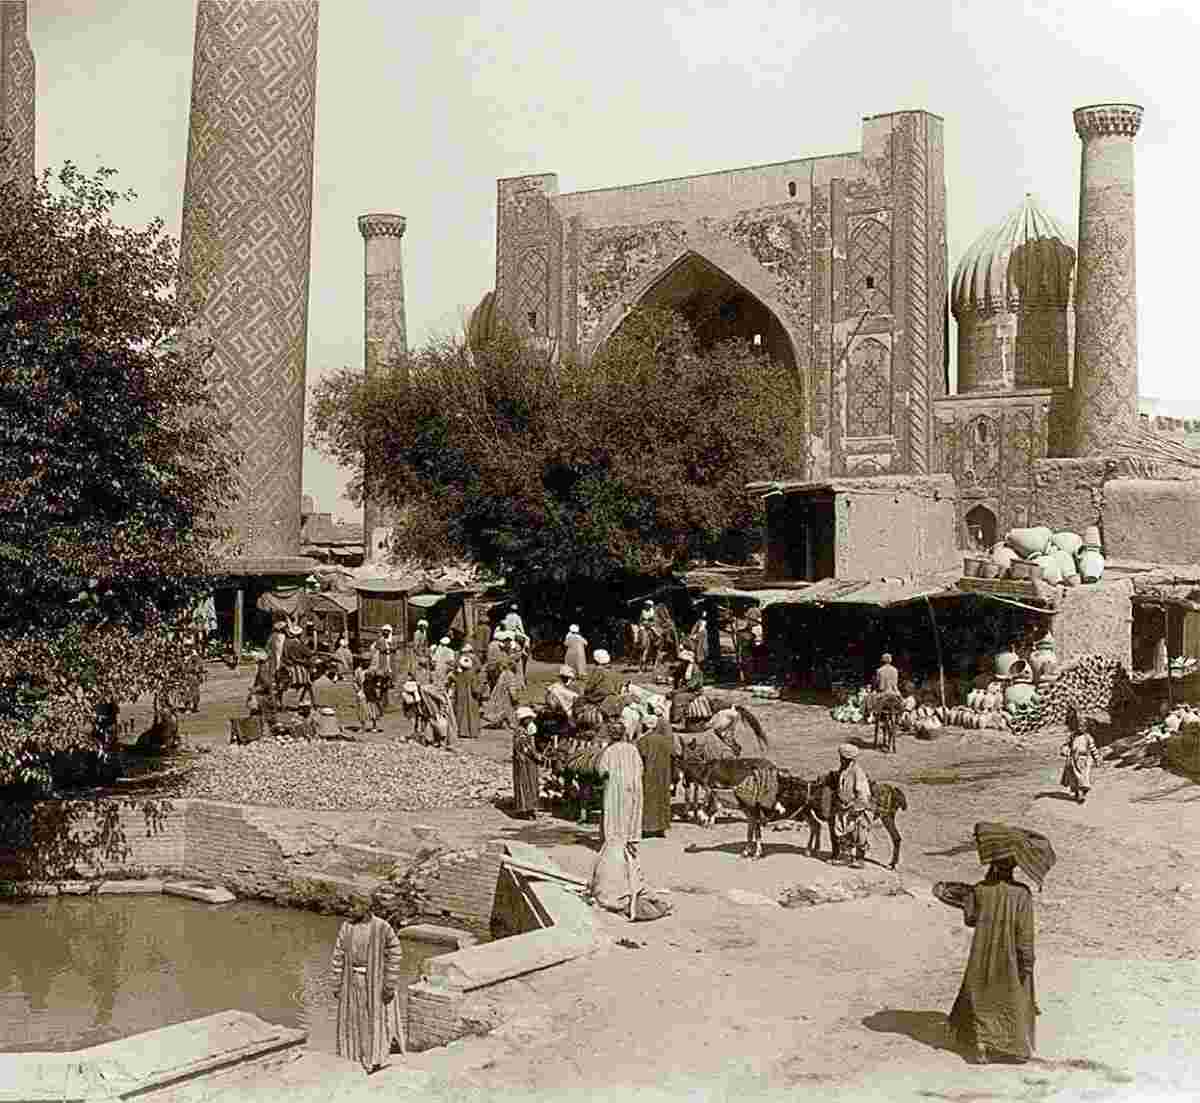 Samarkand. Sar hauz (artificial reservoir), 1897